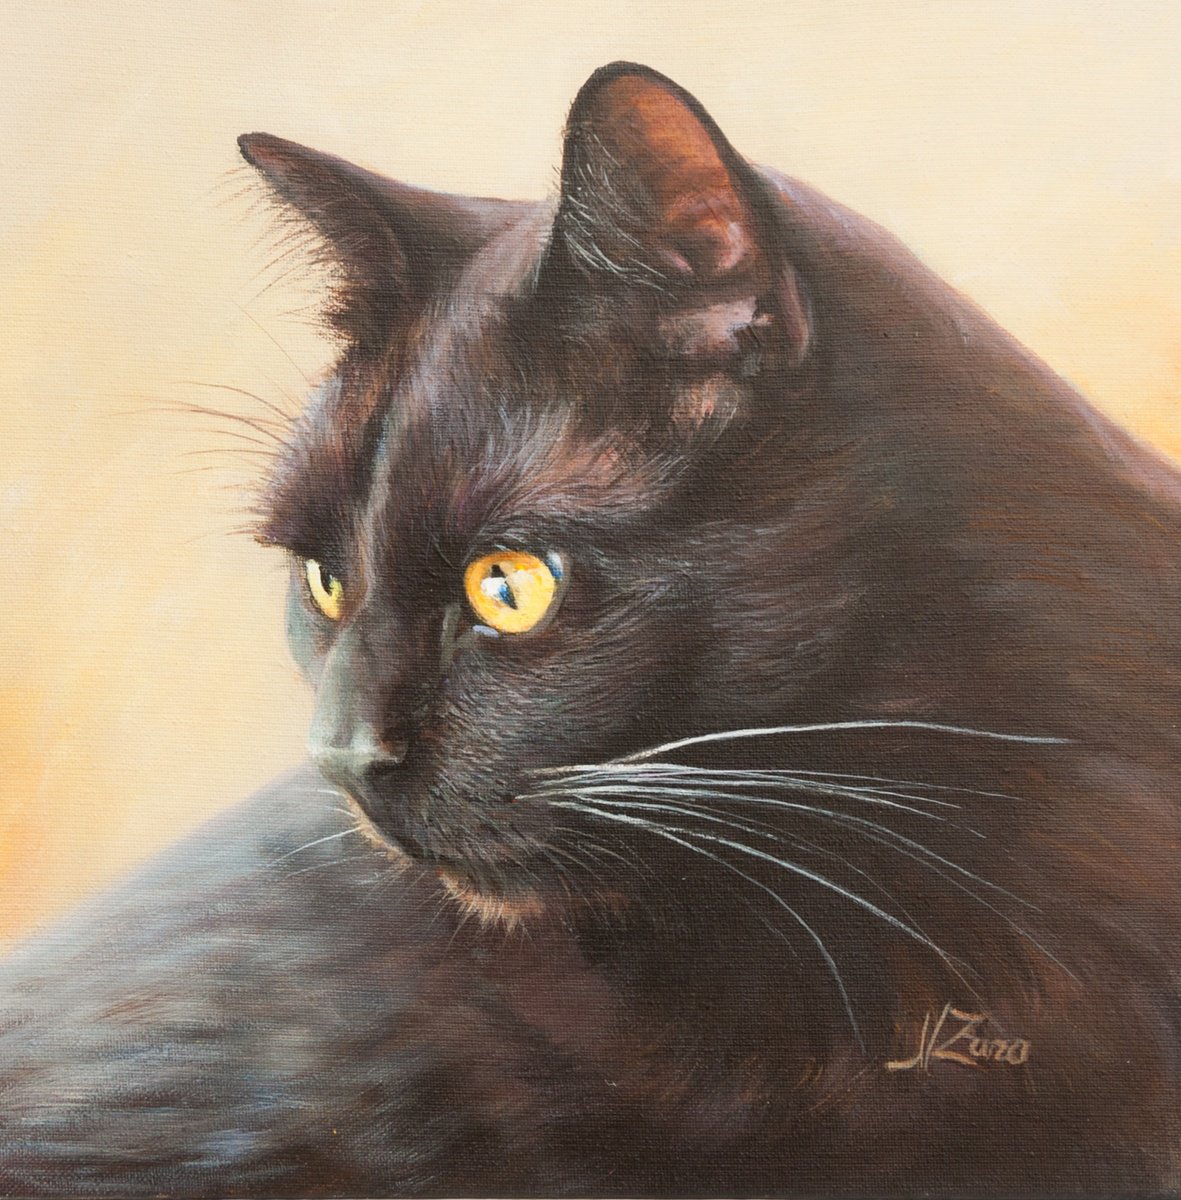 Black cat portrait by Norma Beatriz Zaro